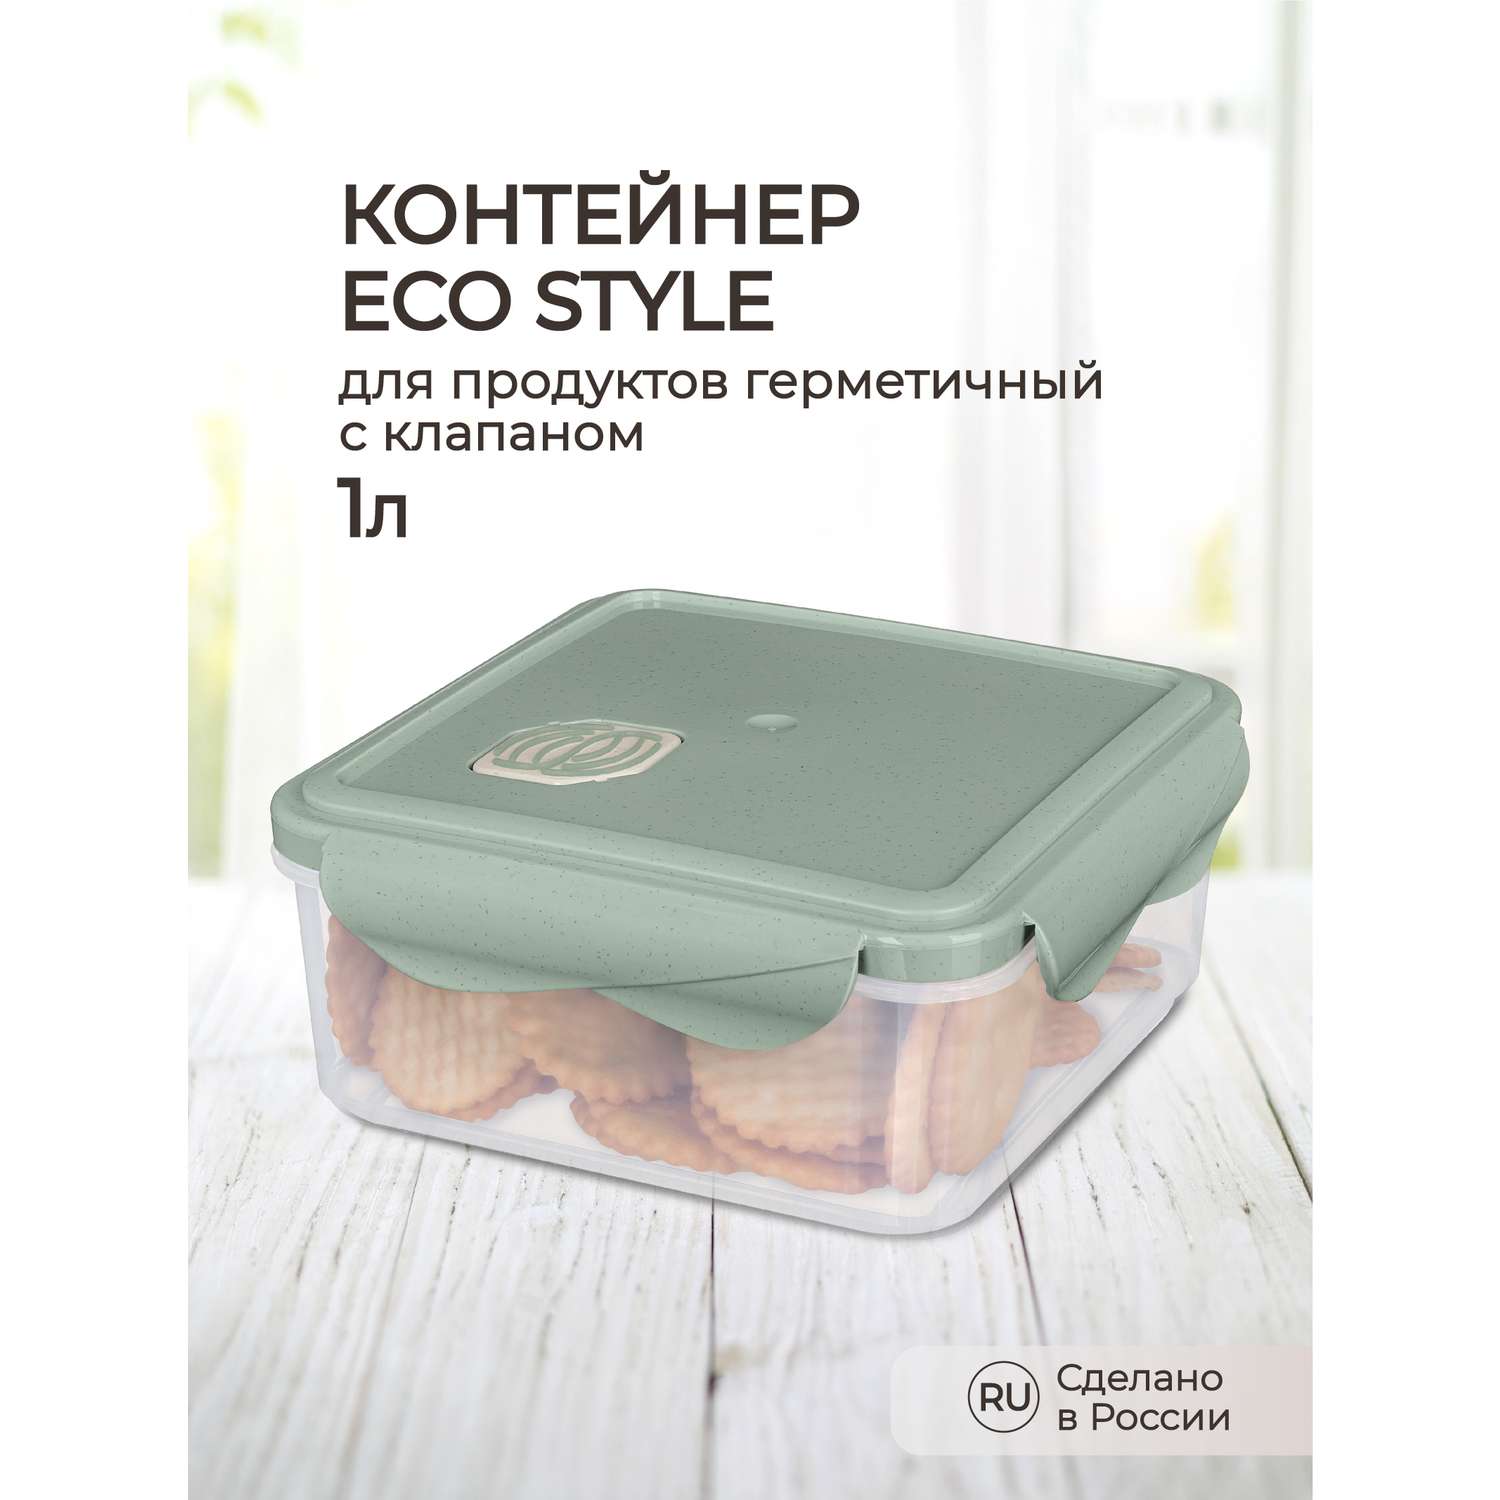 Контейнер Phibo для продуктов герметичный с клапаном Eco Style квадратный 1.0л зеленый флэк - фото 1